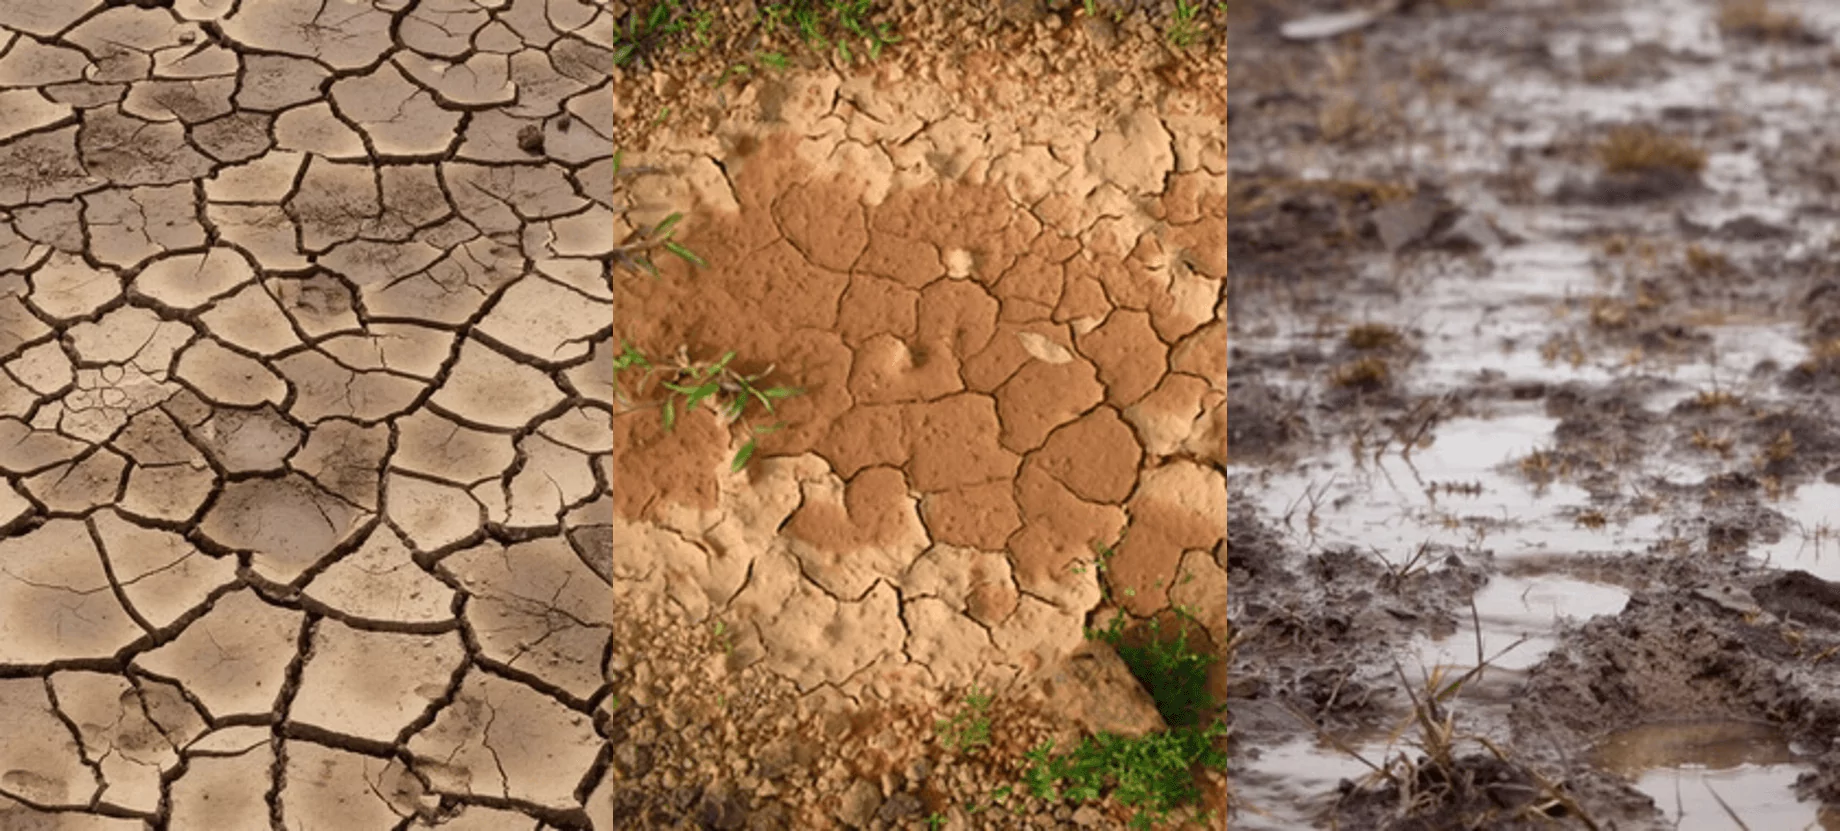 Conductivité thermique des sols secs et humides